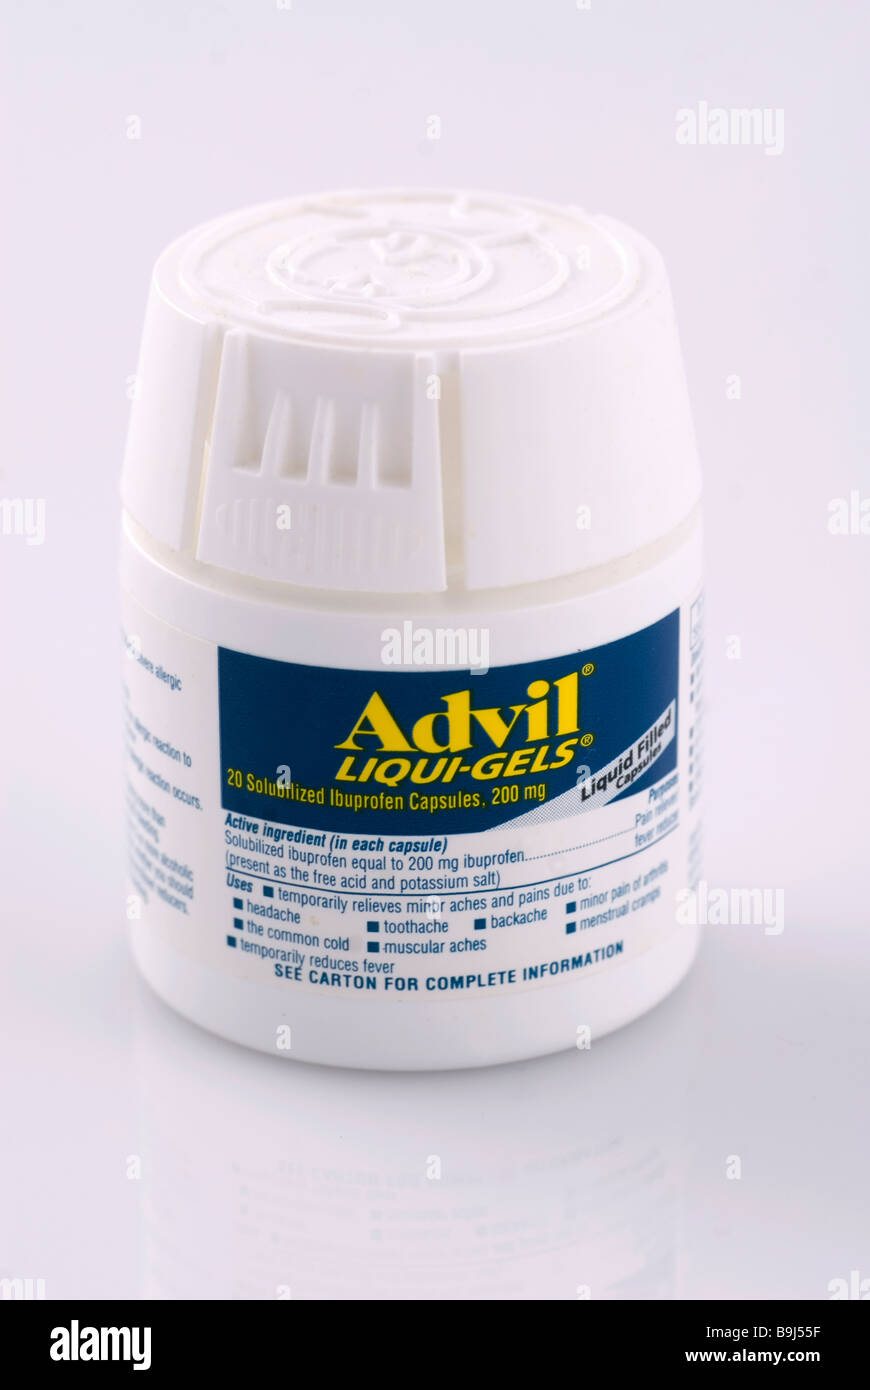 advil liqui gel pain relief medicine stock photo: 23141483 - alamy